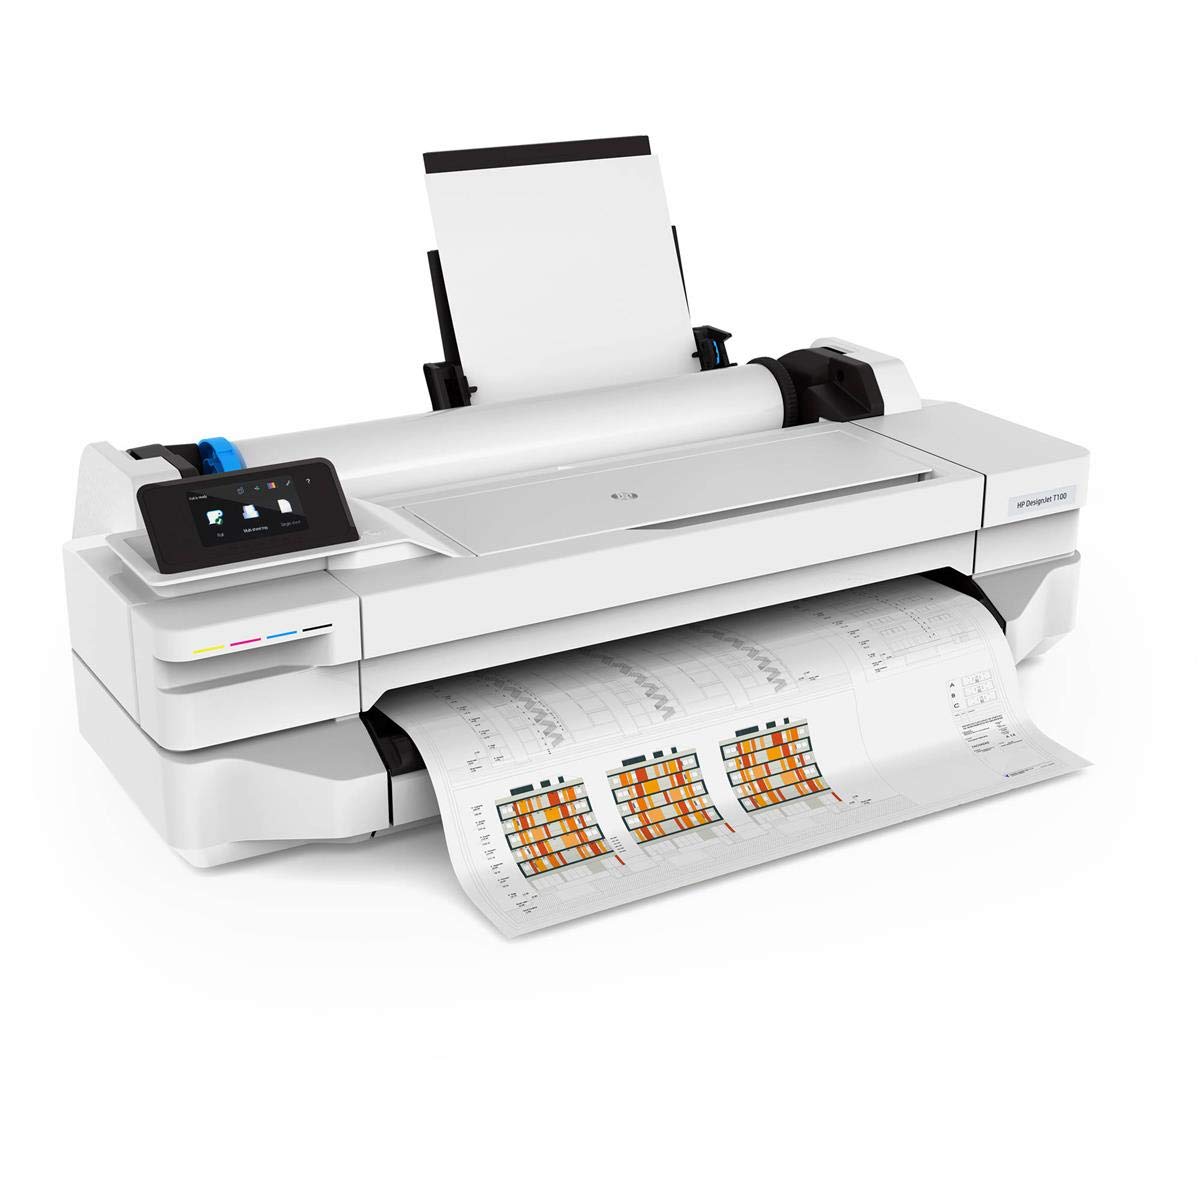 DesignJet T100 Printer series